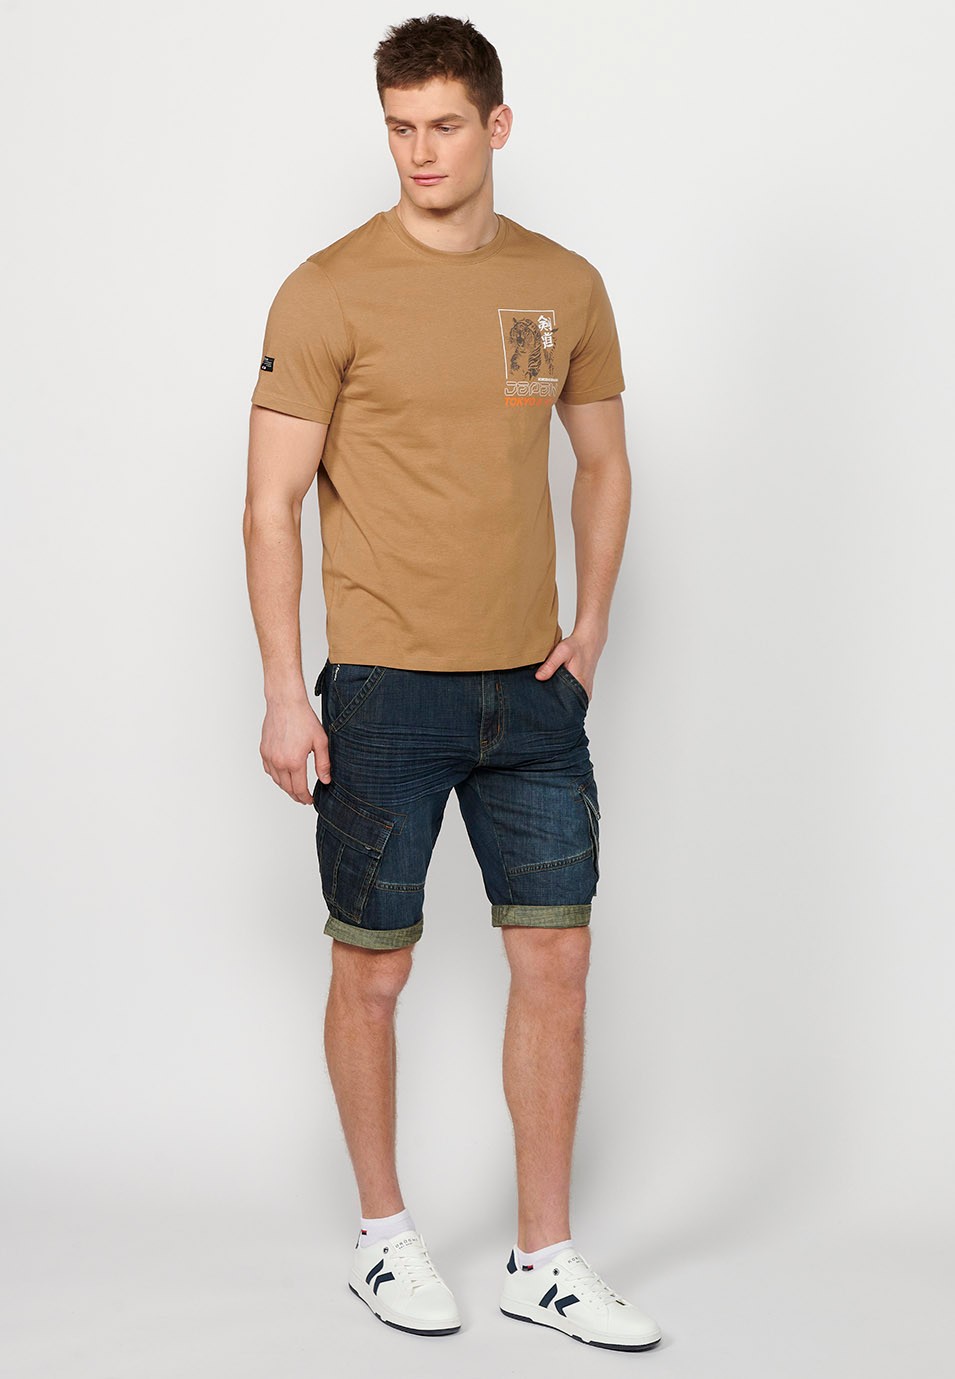 T-shirt manches courtes en coton imprimé jungle tigrou au dos, couleur camel pour homme